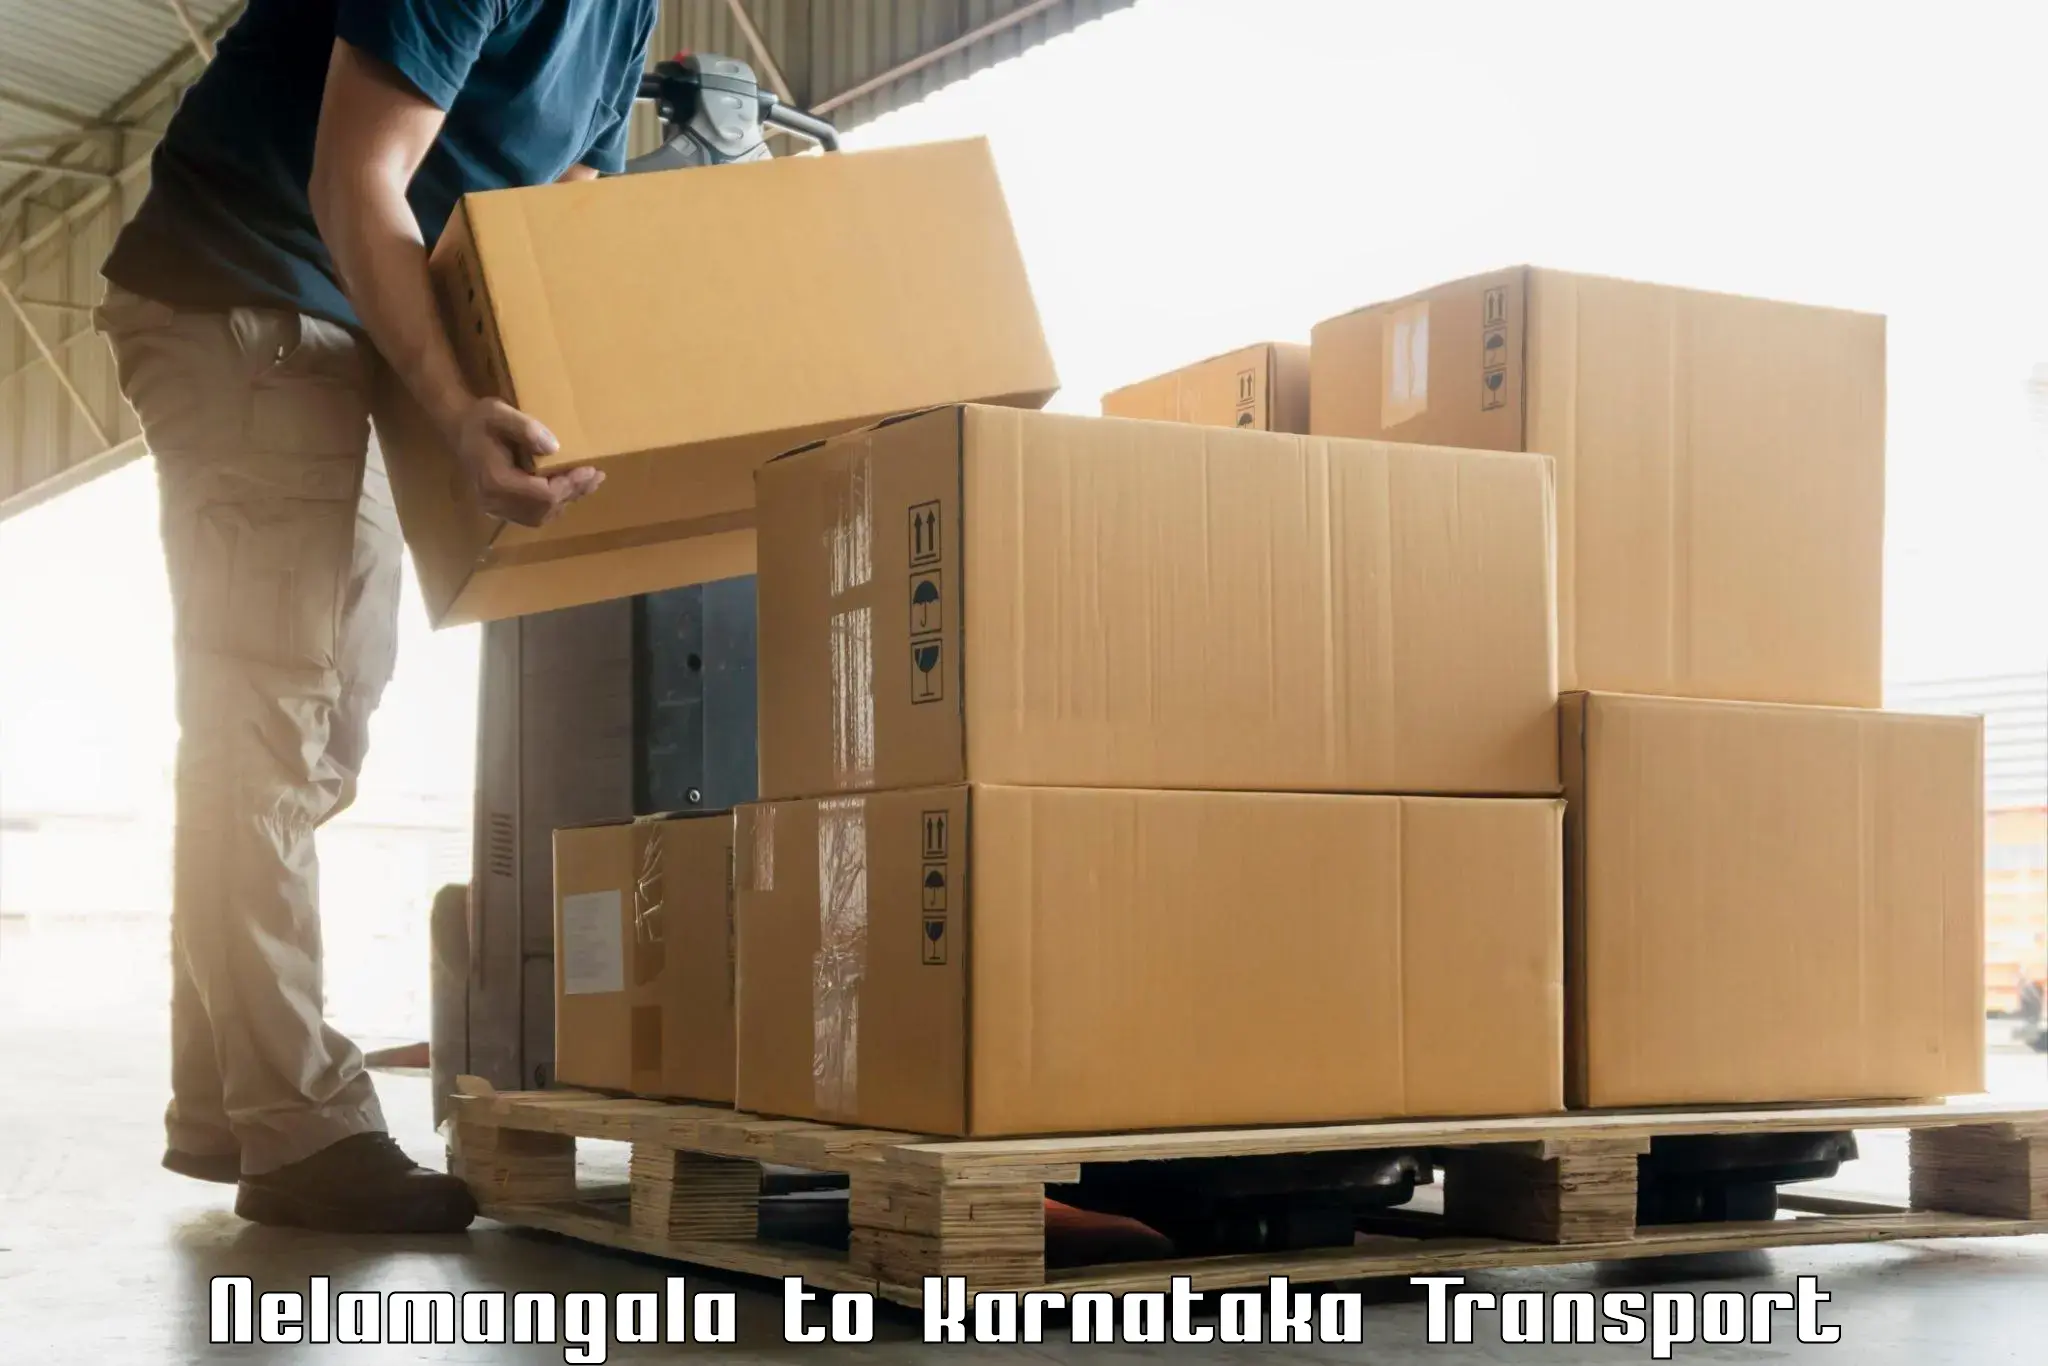 Domestic goods transportation services Nelamangala to Chintamani Kolar